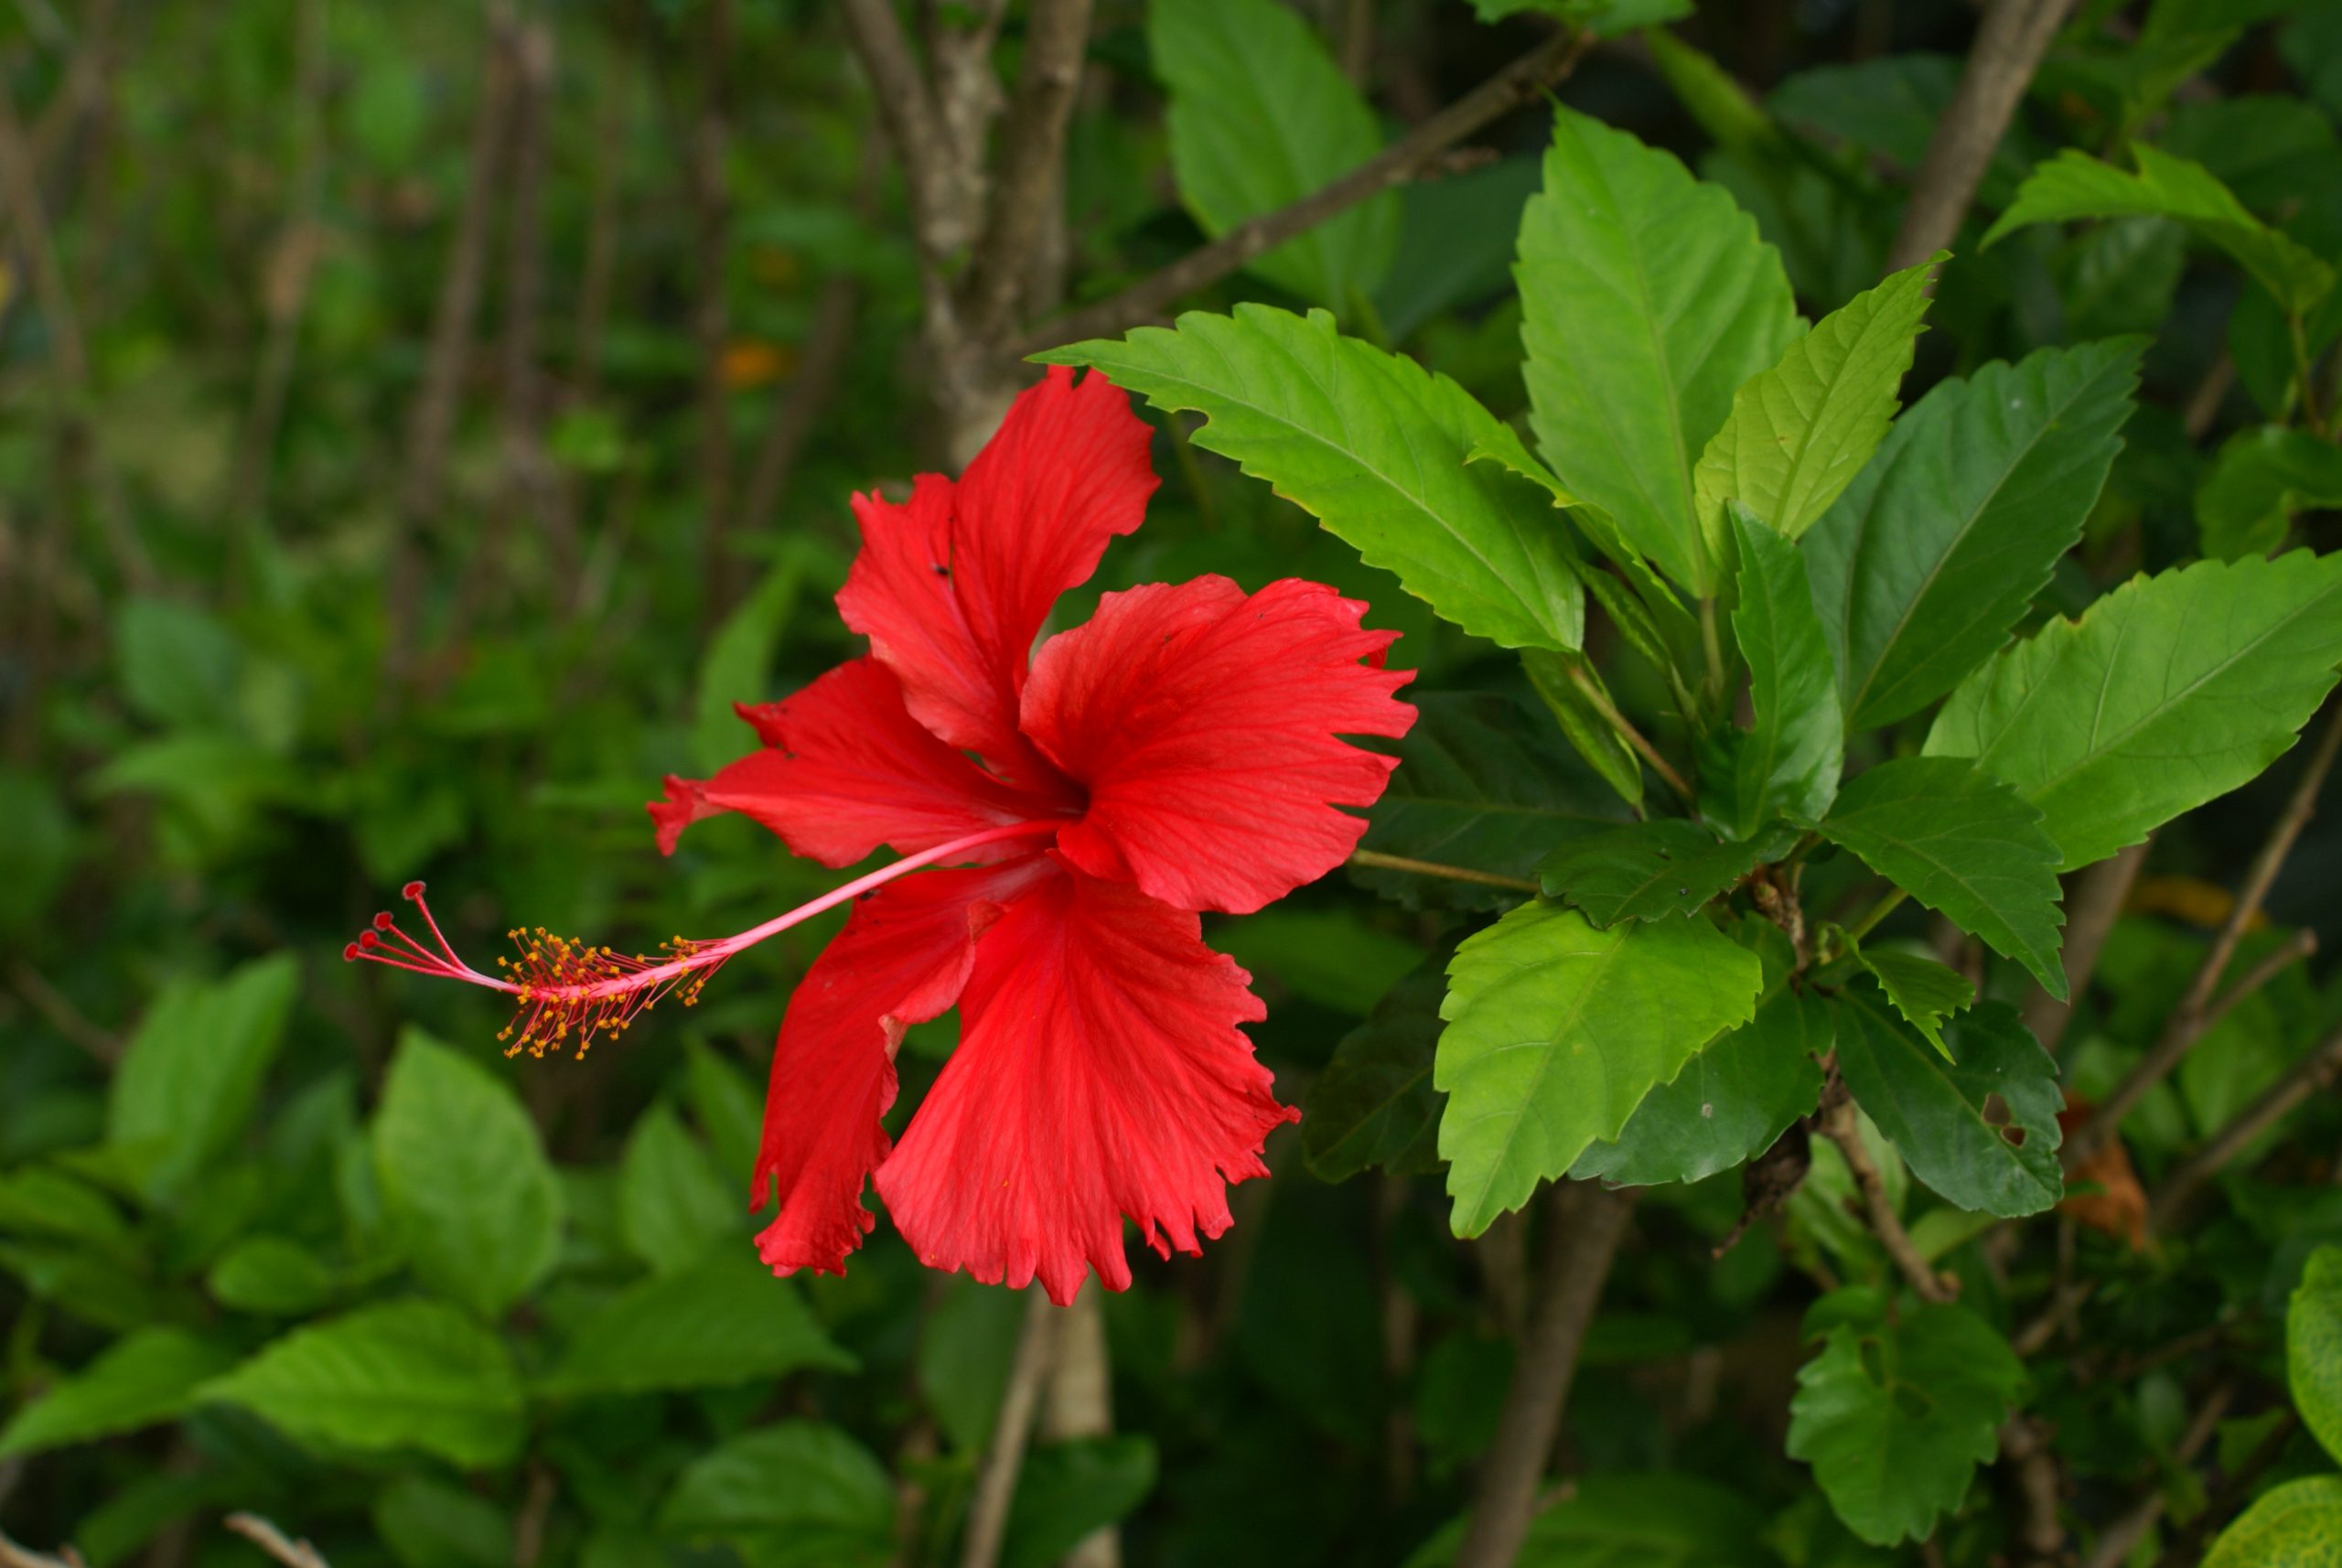 Hibiscus (Hibiscus rosa-sinensis)